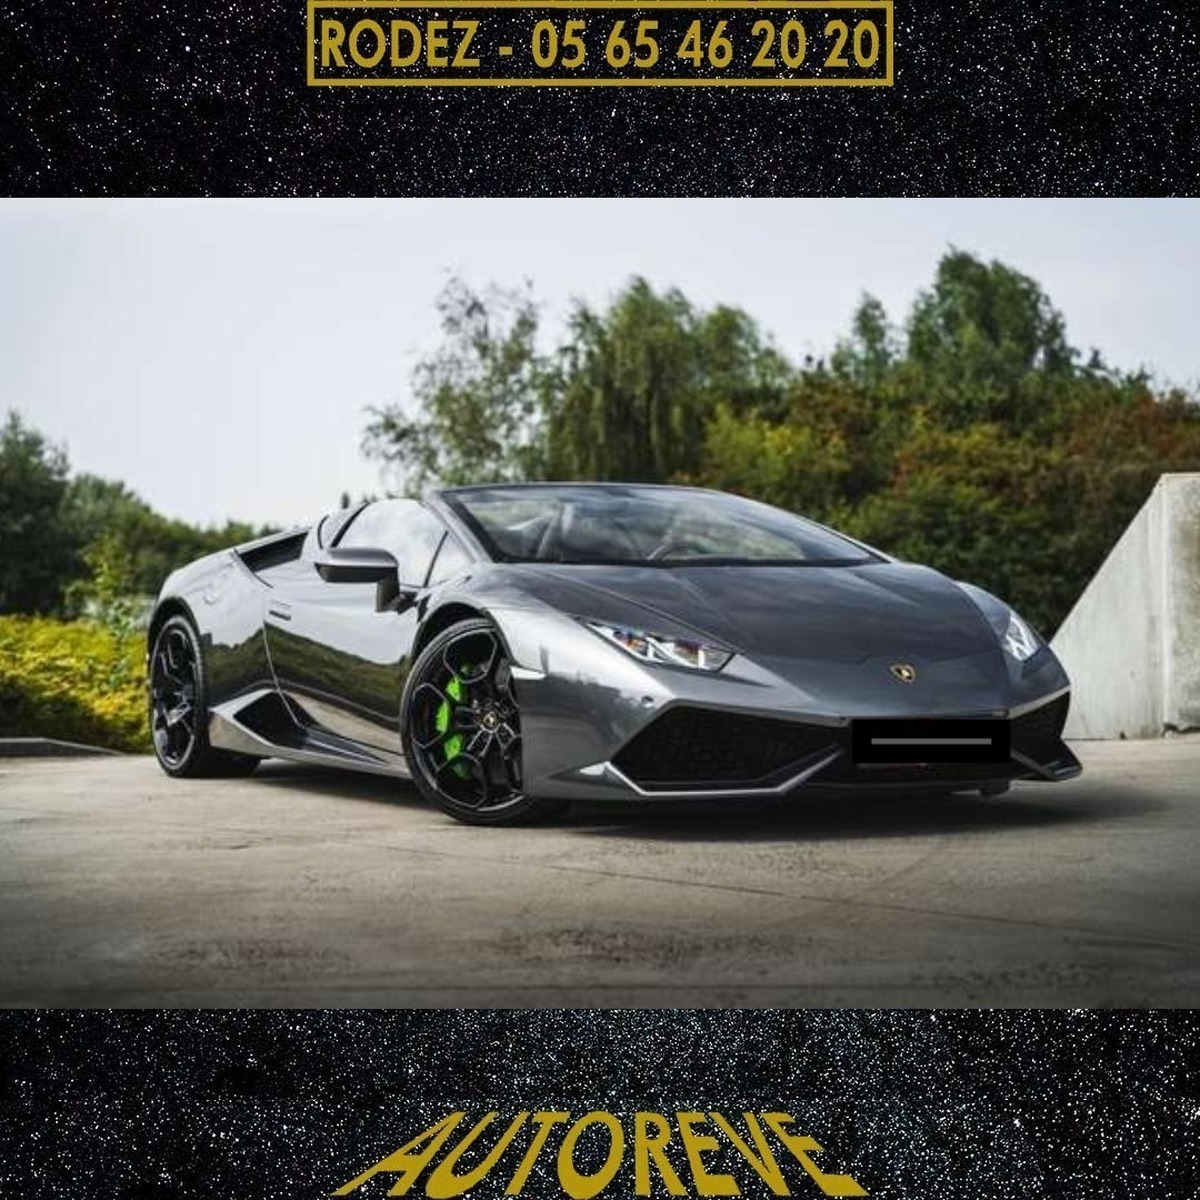 Lamborghini - Huracan